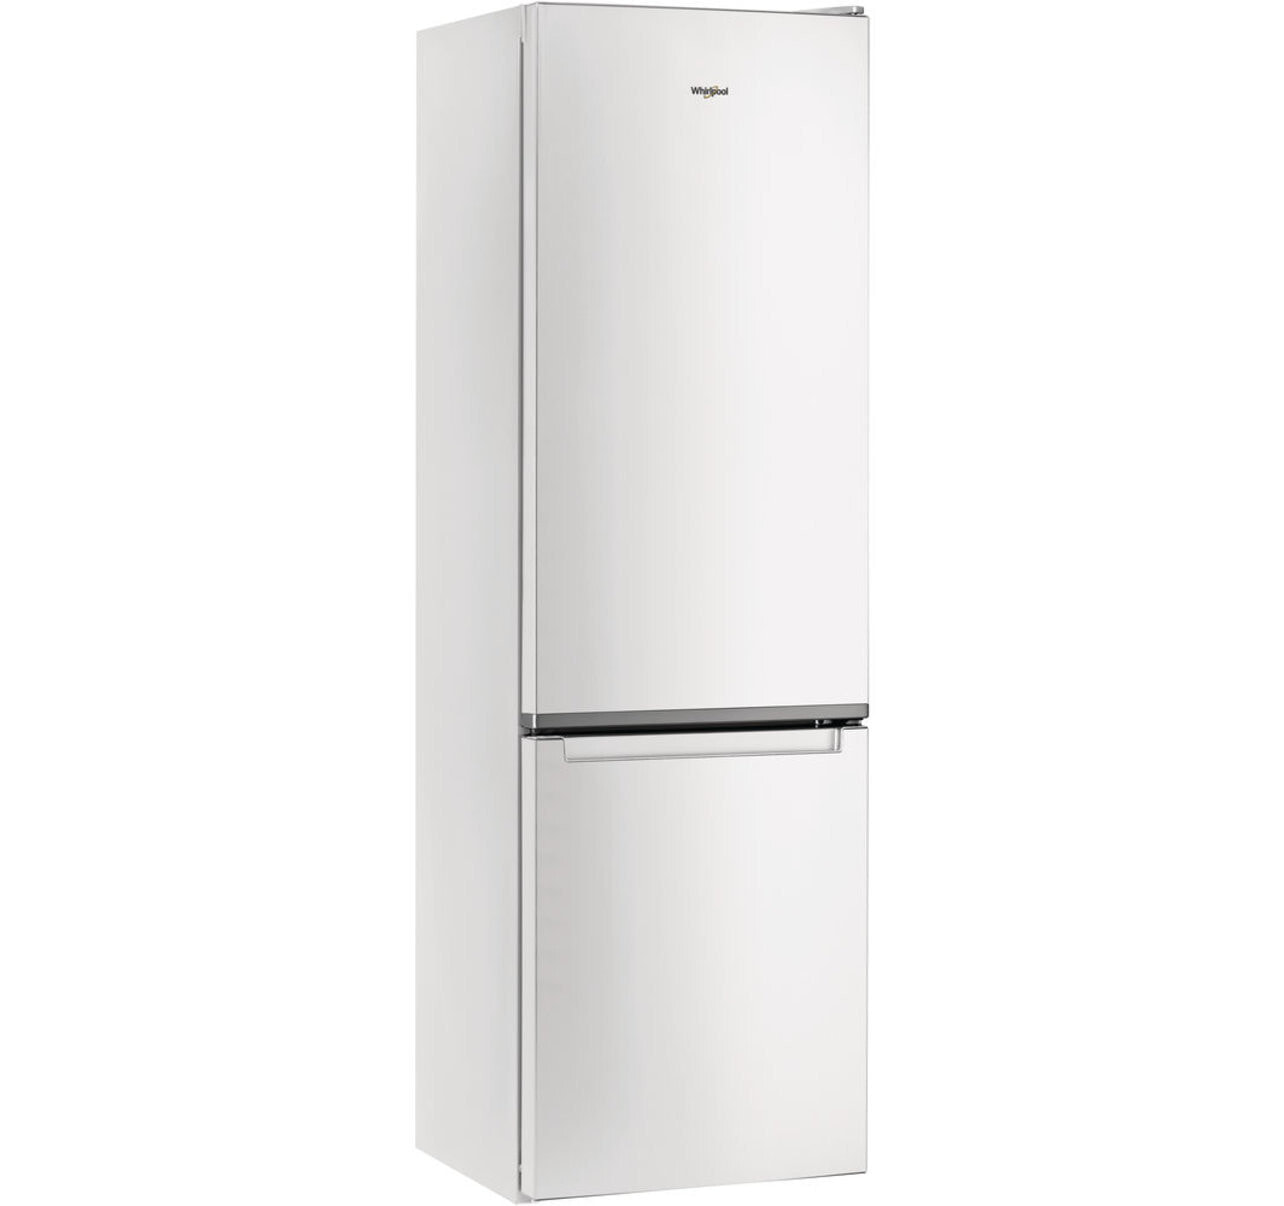 Whirlpool W5 911E W 1 холодильник с морозильной камерой Отдельно стоящий Белый 372 L A+